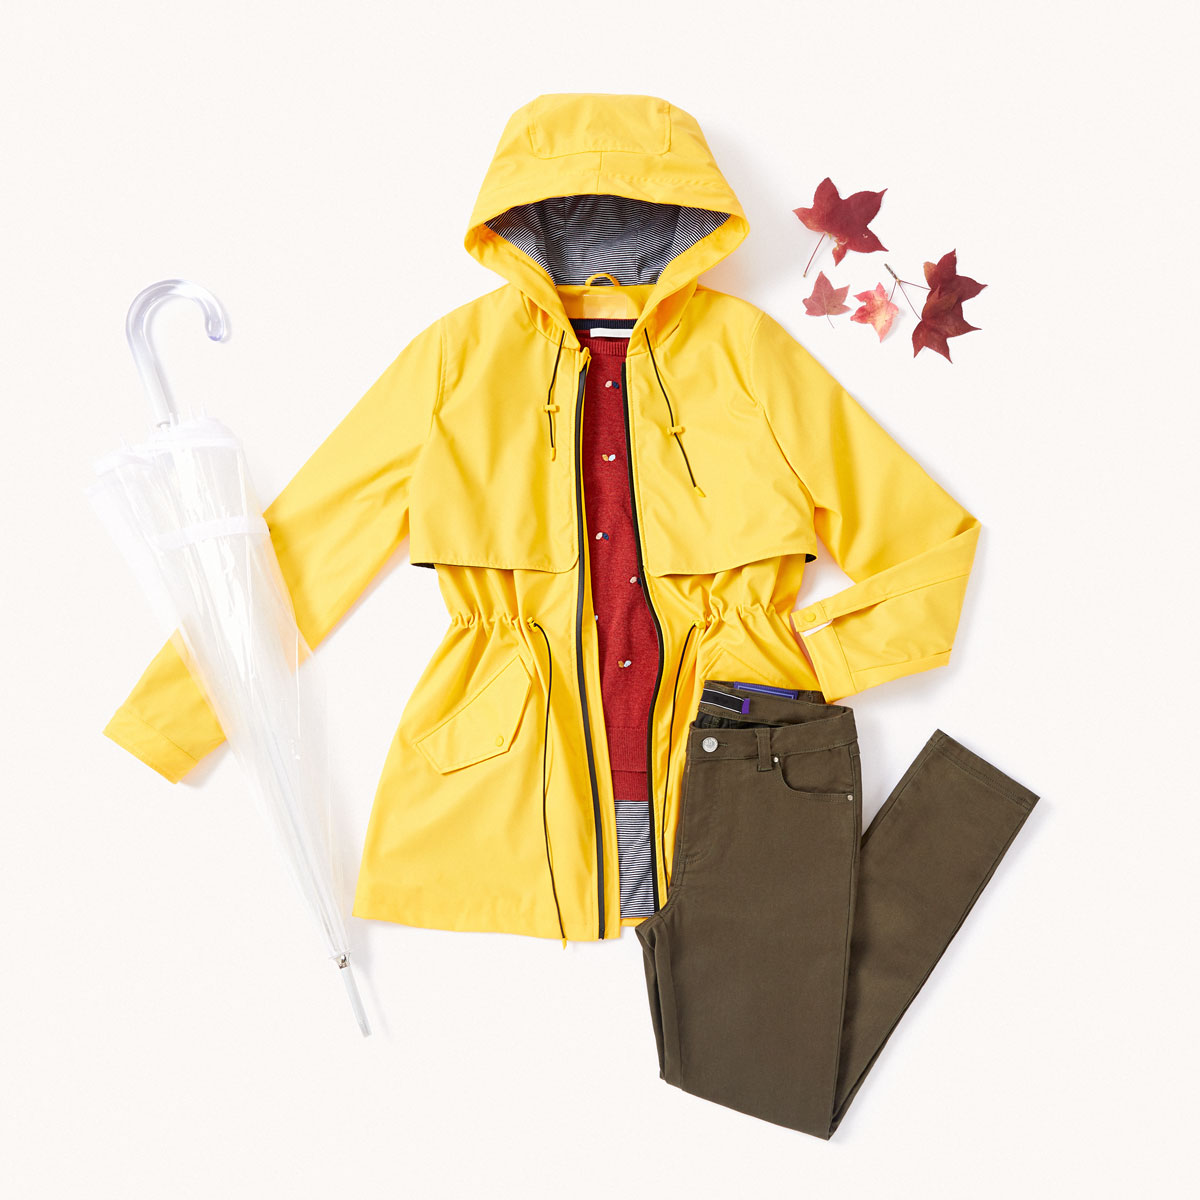 chubasquero amarillo y pantalón caqui para lluvia